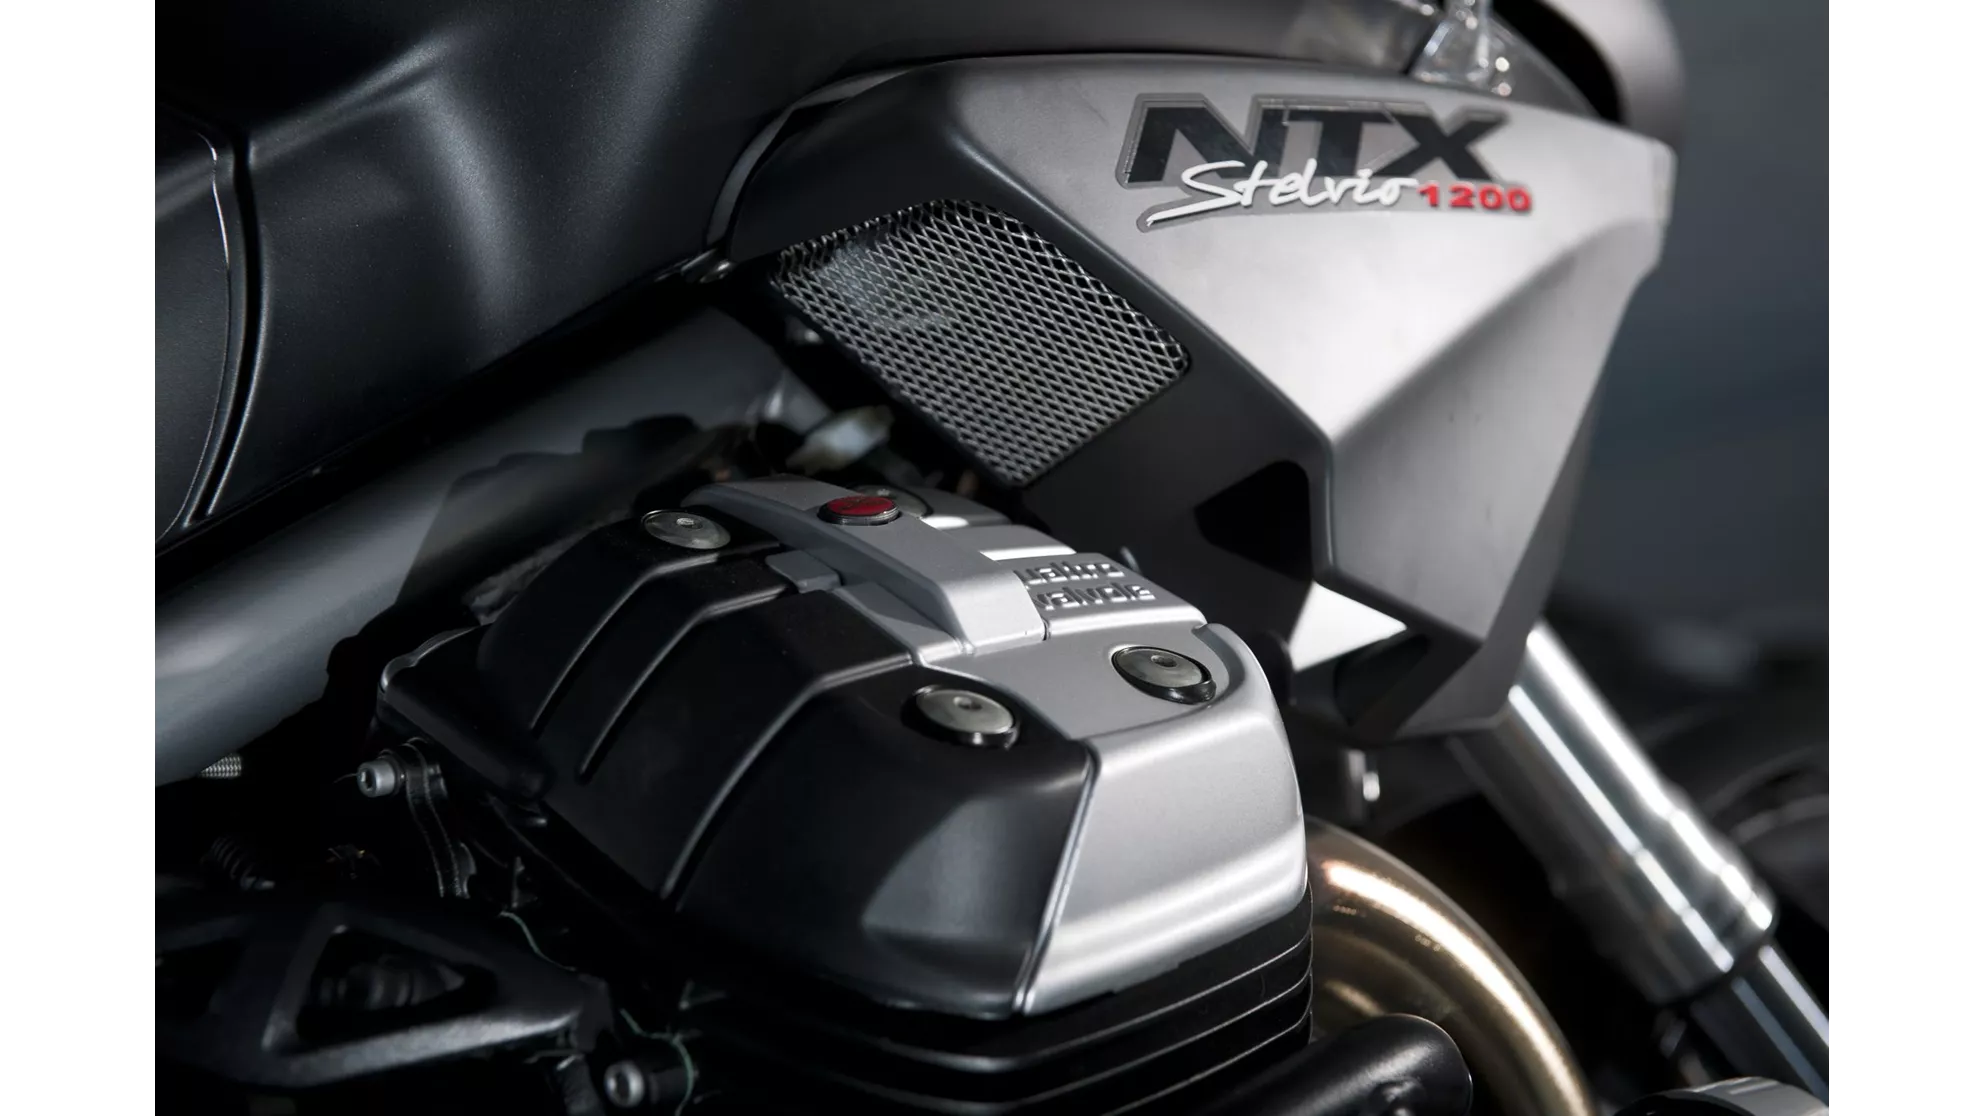 Moto Guzzi Stelvio 1200 8V NTX - Image 9